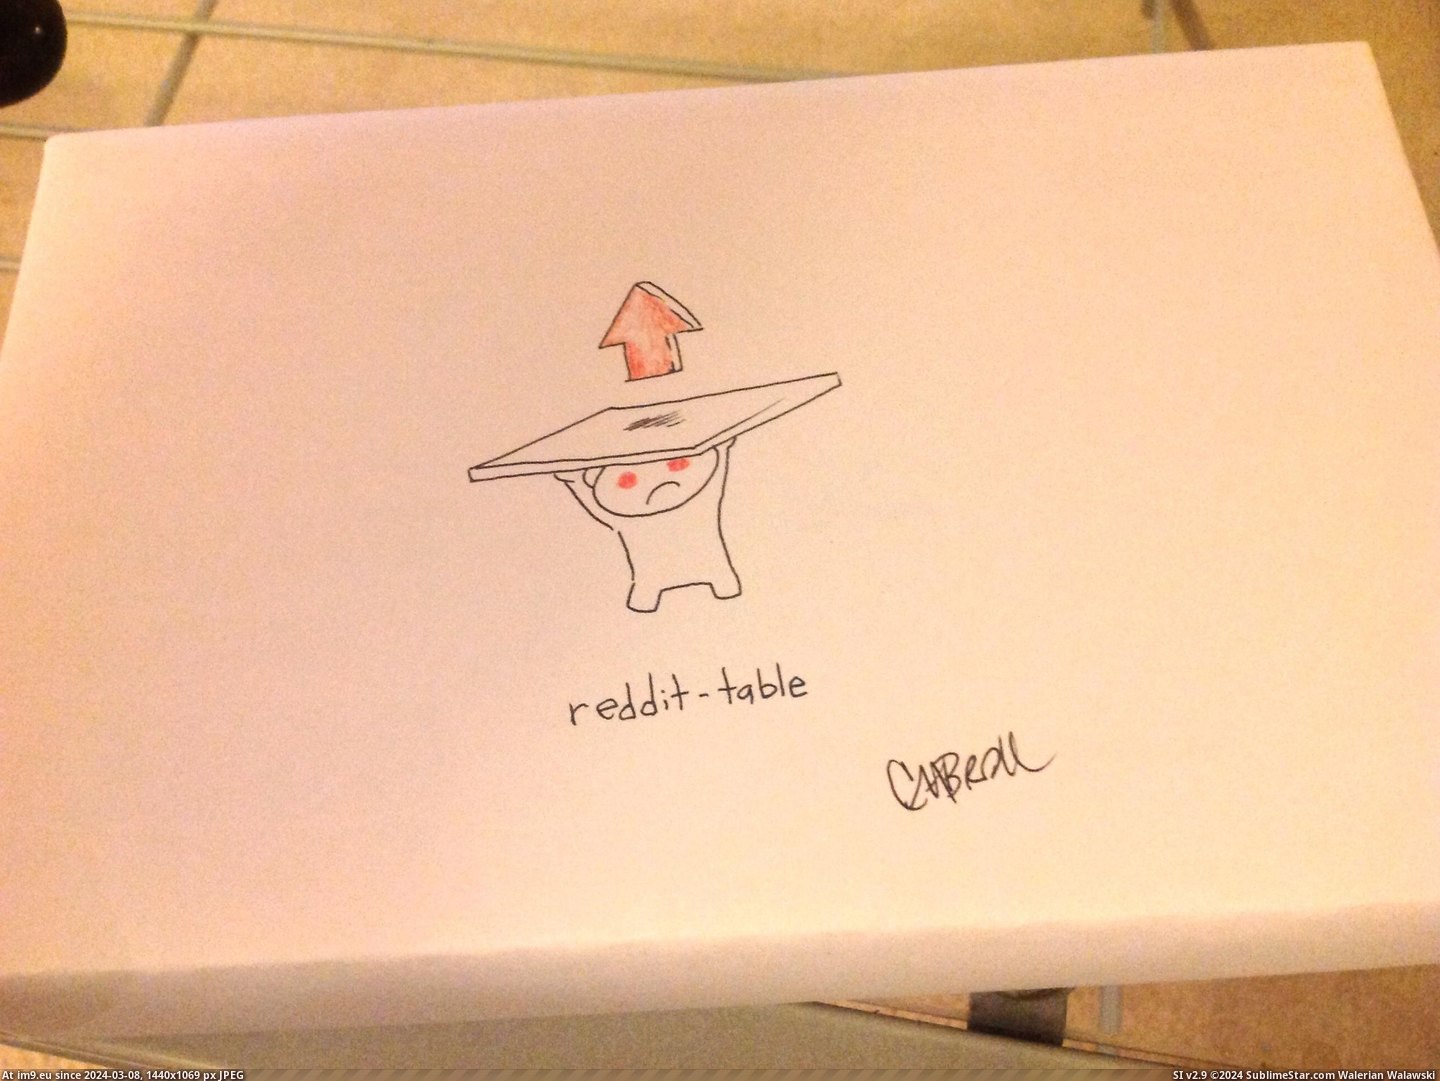 #Box #Redditable #Draw [Pics] 'Please draw something redditable on the box' 2 Pic. (Bild von album My r/PICS favs))